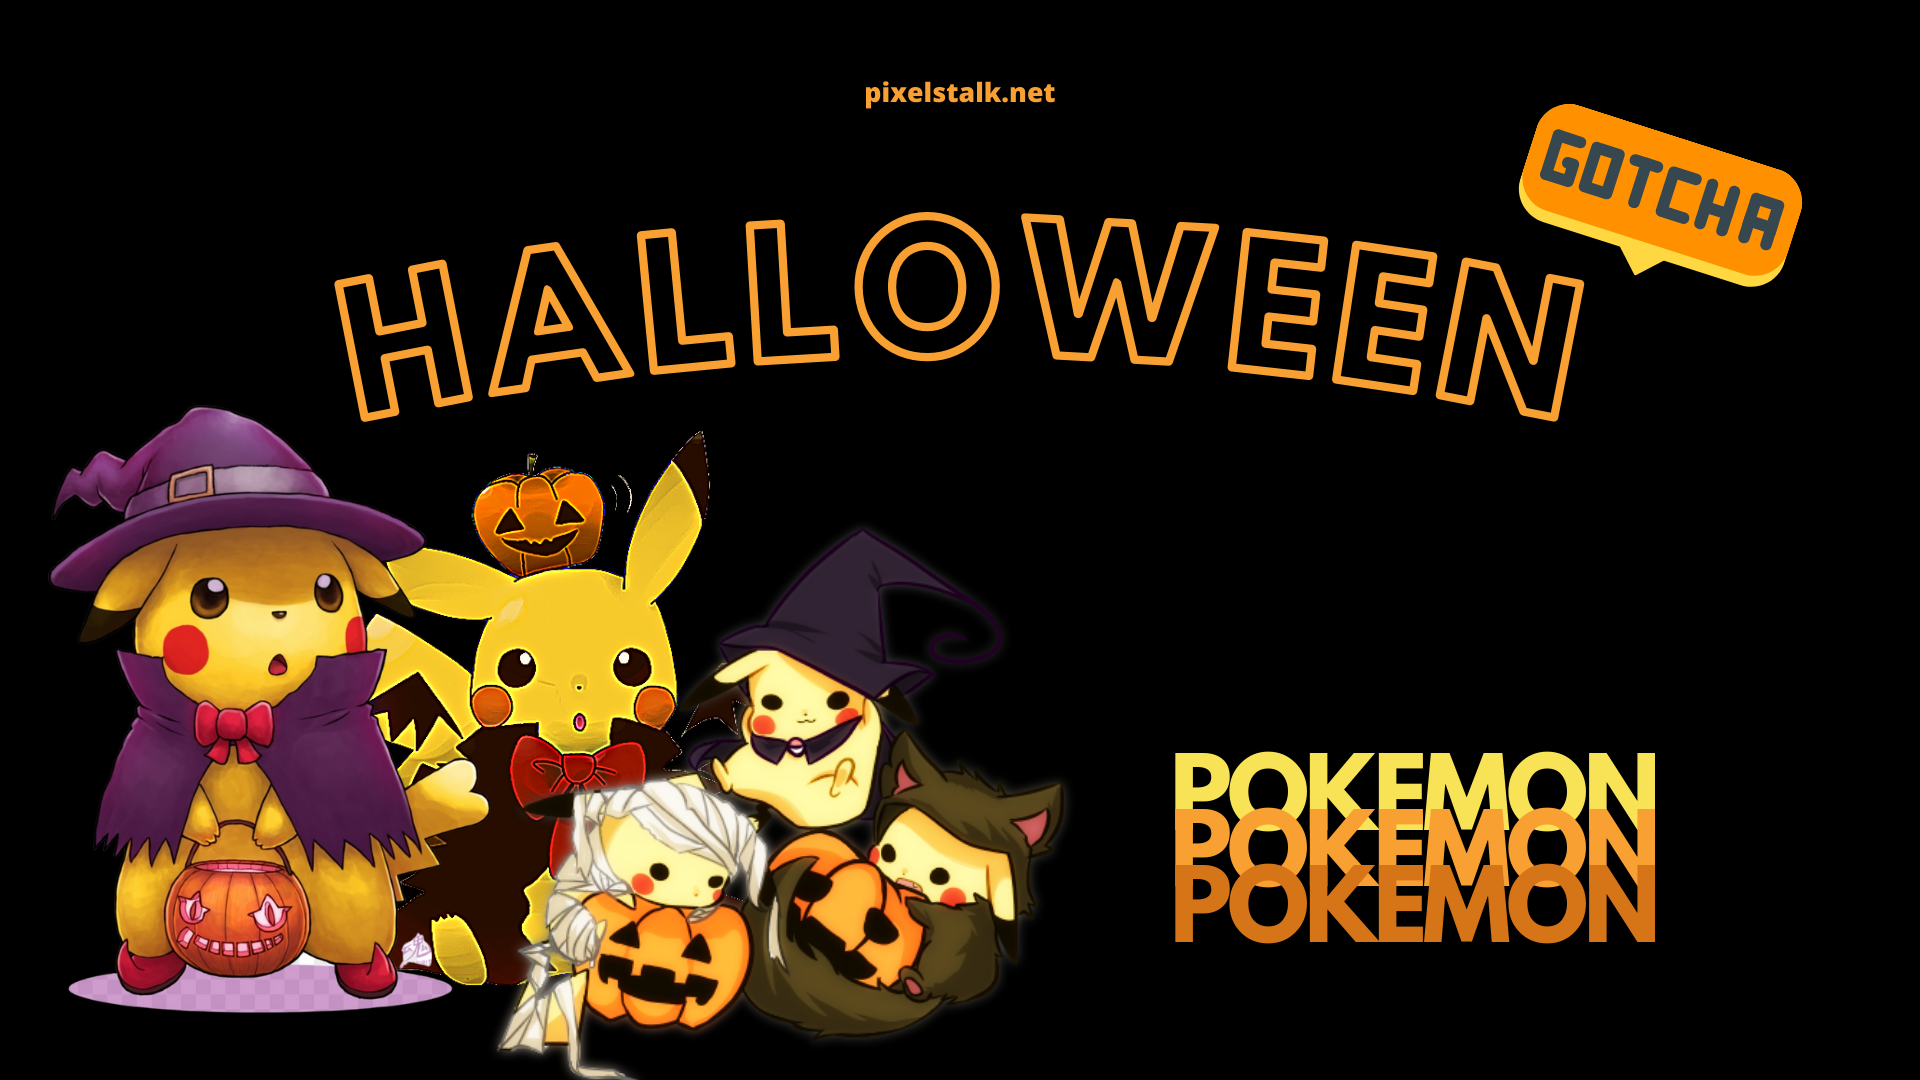 Pokemon Halloween Wallpaper for Desktop, PC and Mobile